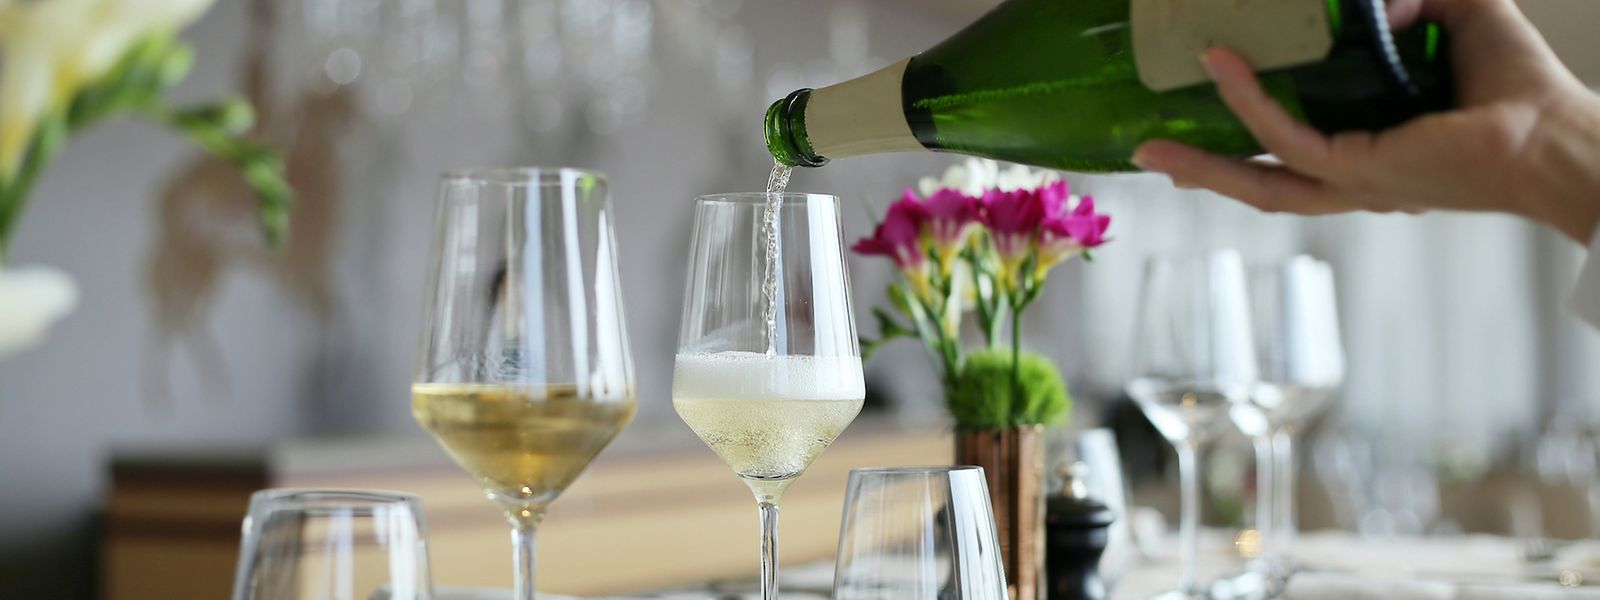 Die Glasform beeinflusst den Geschmack beim Champagner-Schlürfen. Ideal ist ein Weißburgunderglas mit eingraviertem Moussierpunkt. Er bündelt die Perlen zu einem Aromaaufzug.  